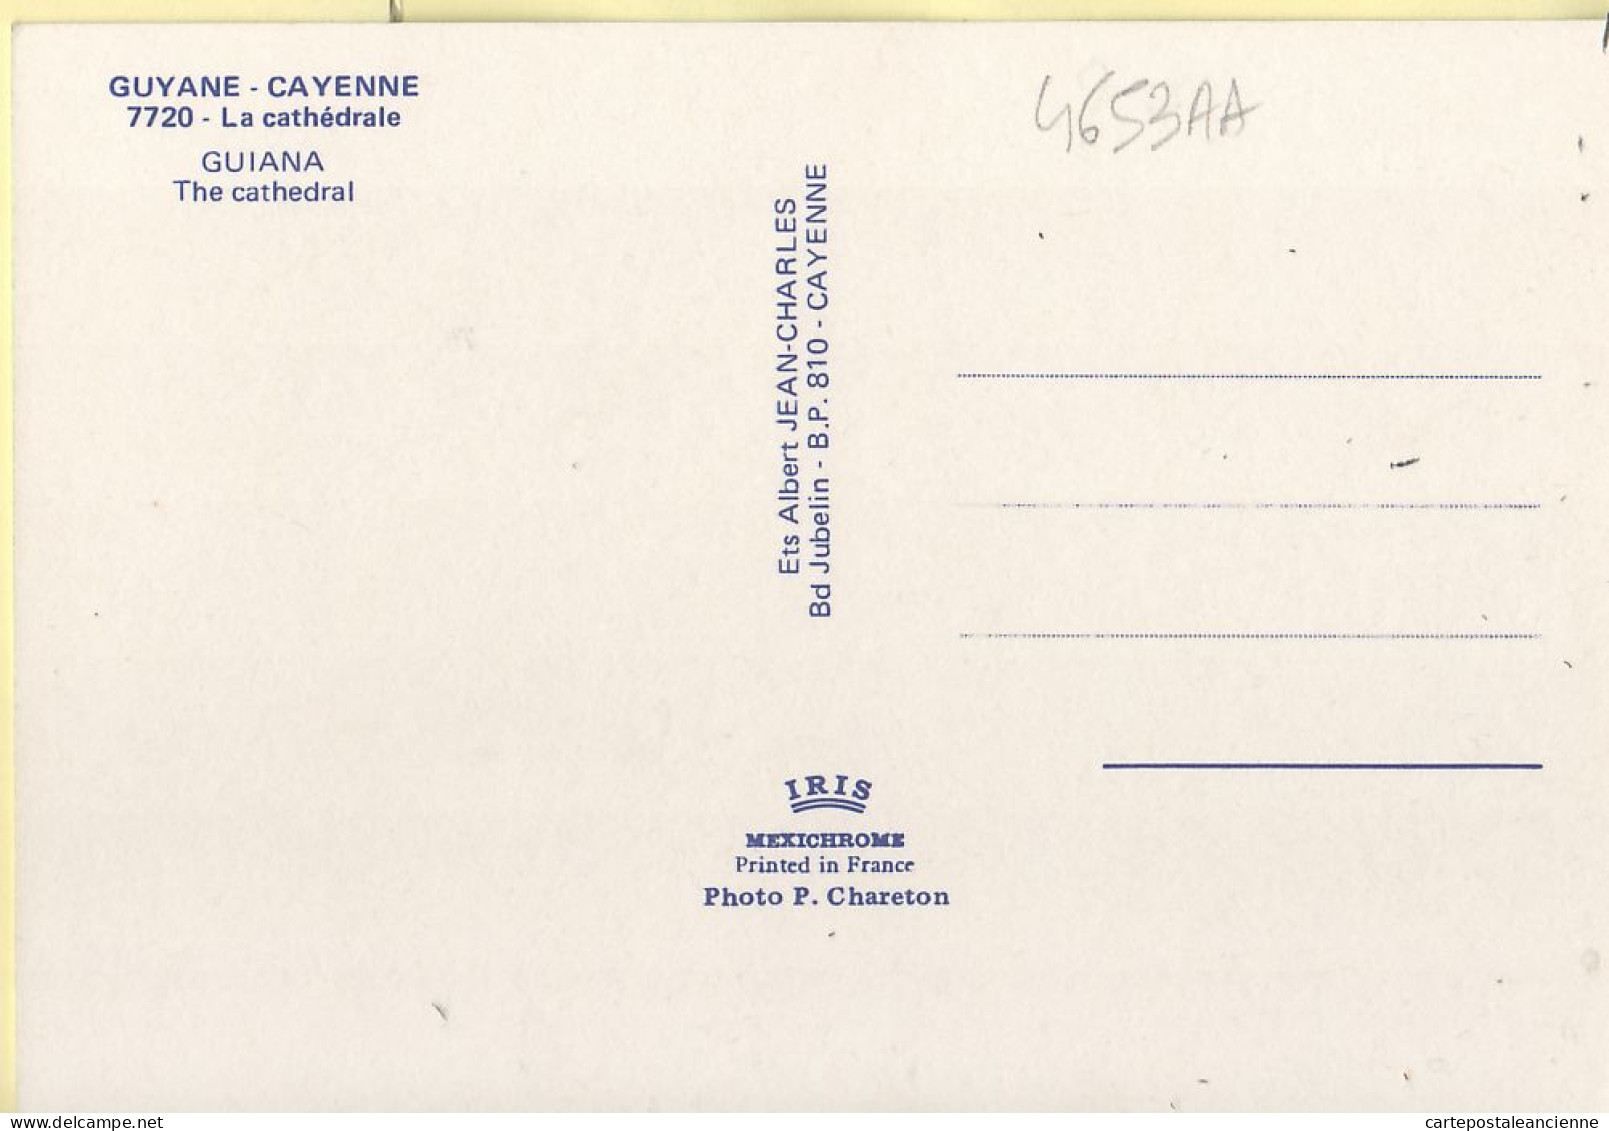 16161 / Guyanne Française CAYENNE Cathédrale SAINT-SAUVEUR GUIANA Cathedral Automobiles 1975s -Photo CHARETON 77 - Cayenne